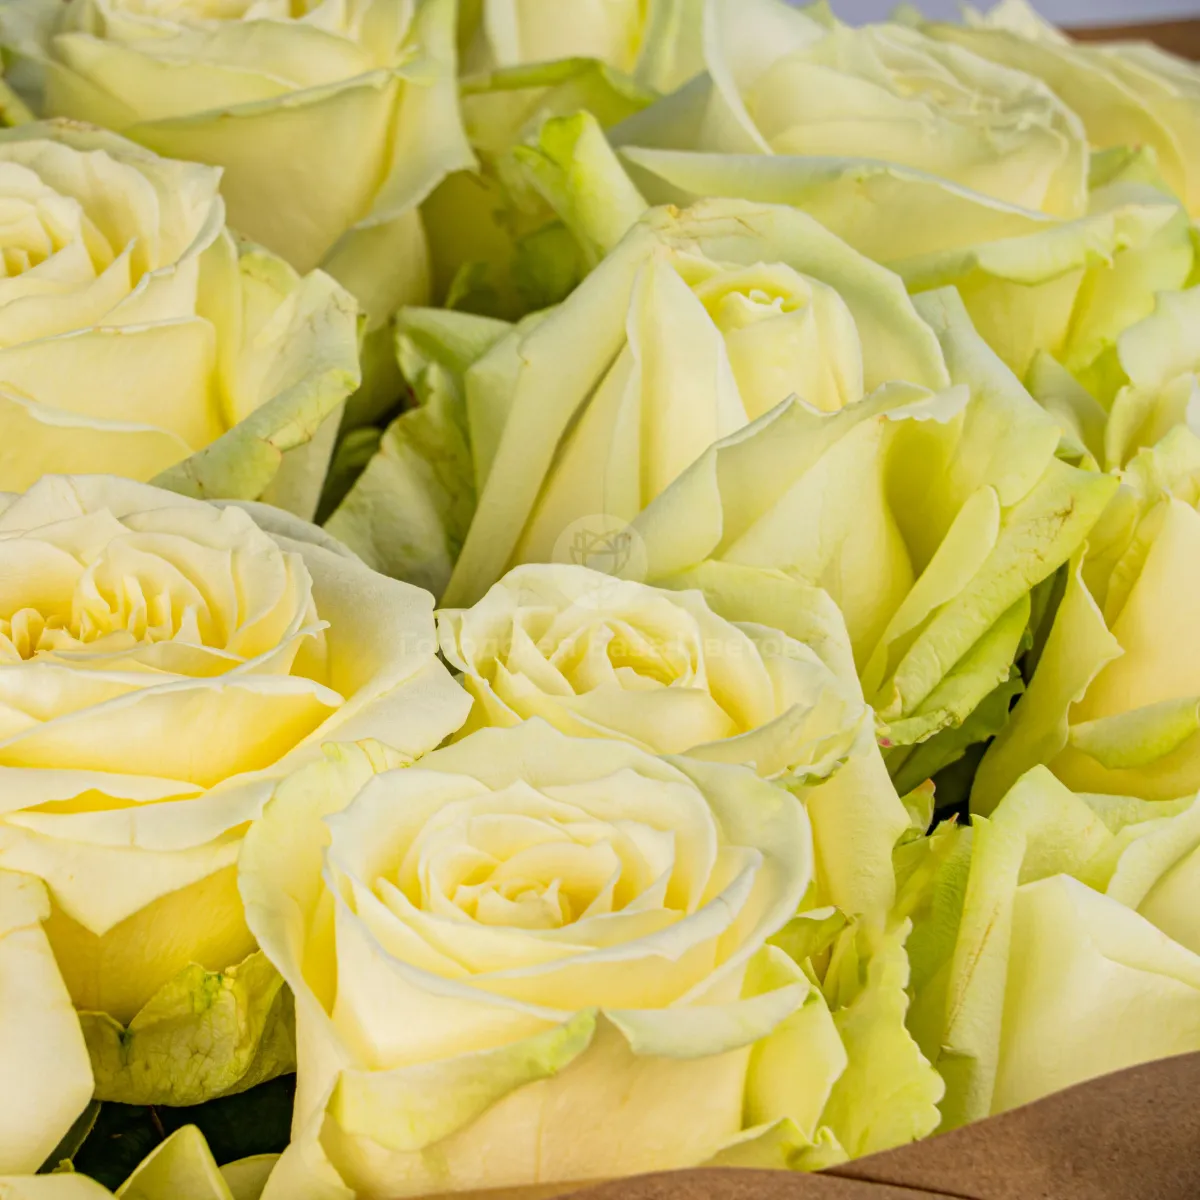 33 бело-зеленые розы (70 см)